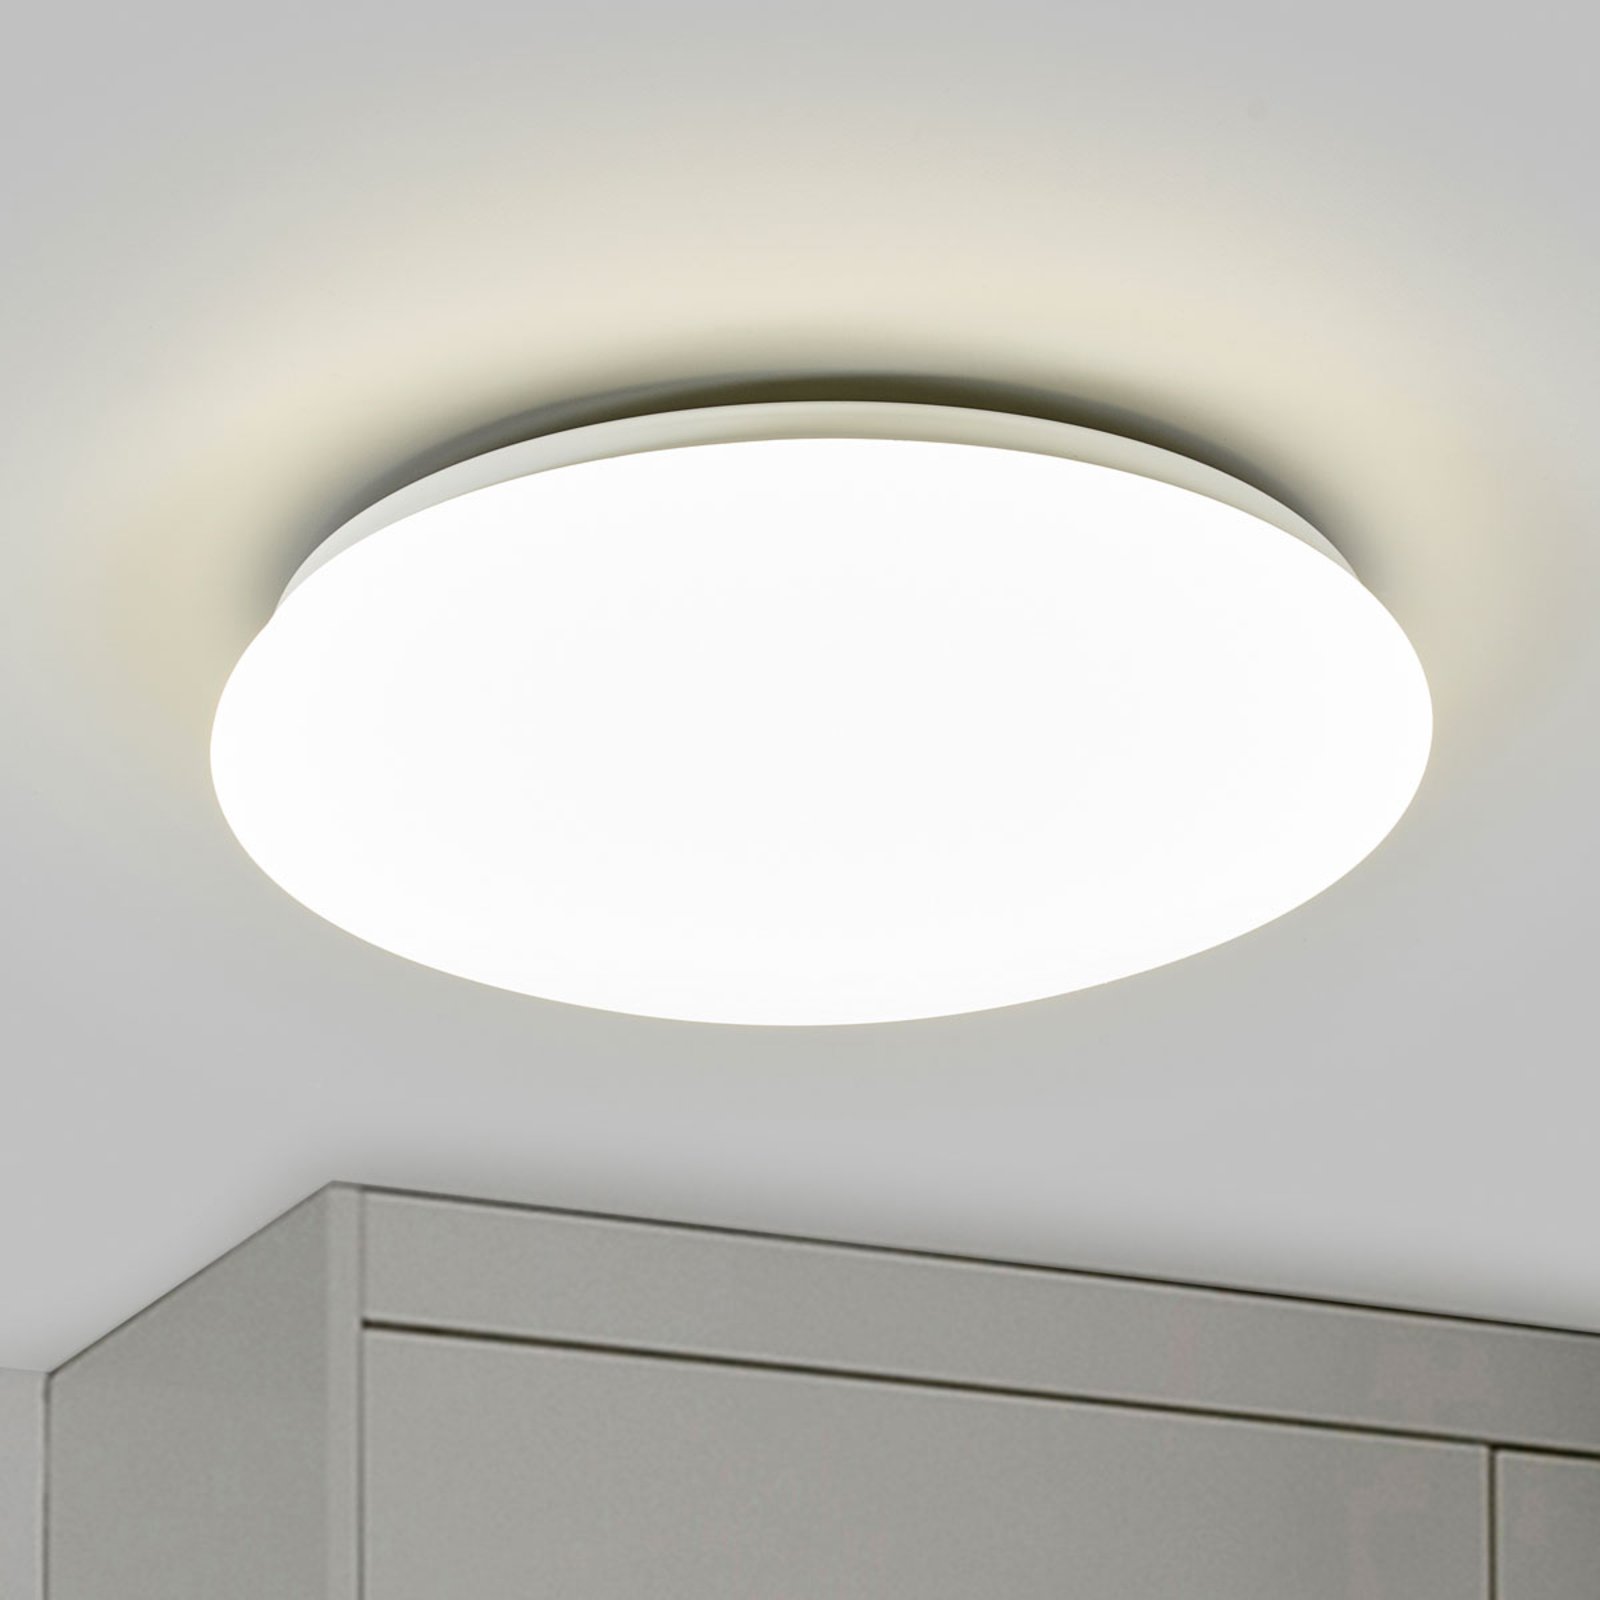 boete krant Lijkenhuis Philips Suede - ronde LED plafondlamp, Ø 38 cm | Lampen24.nl